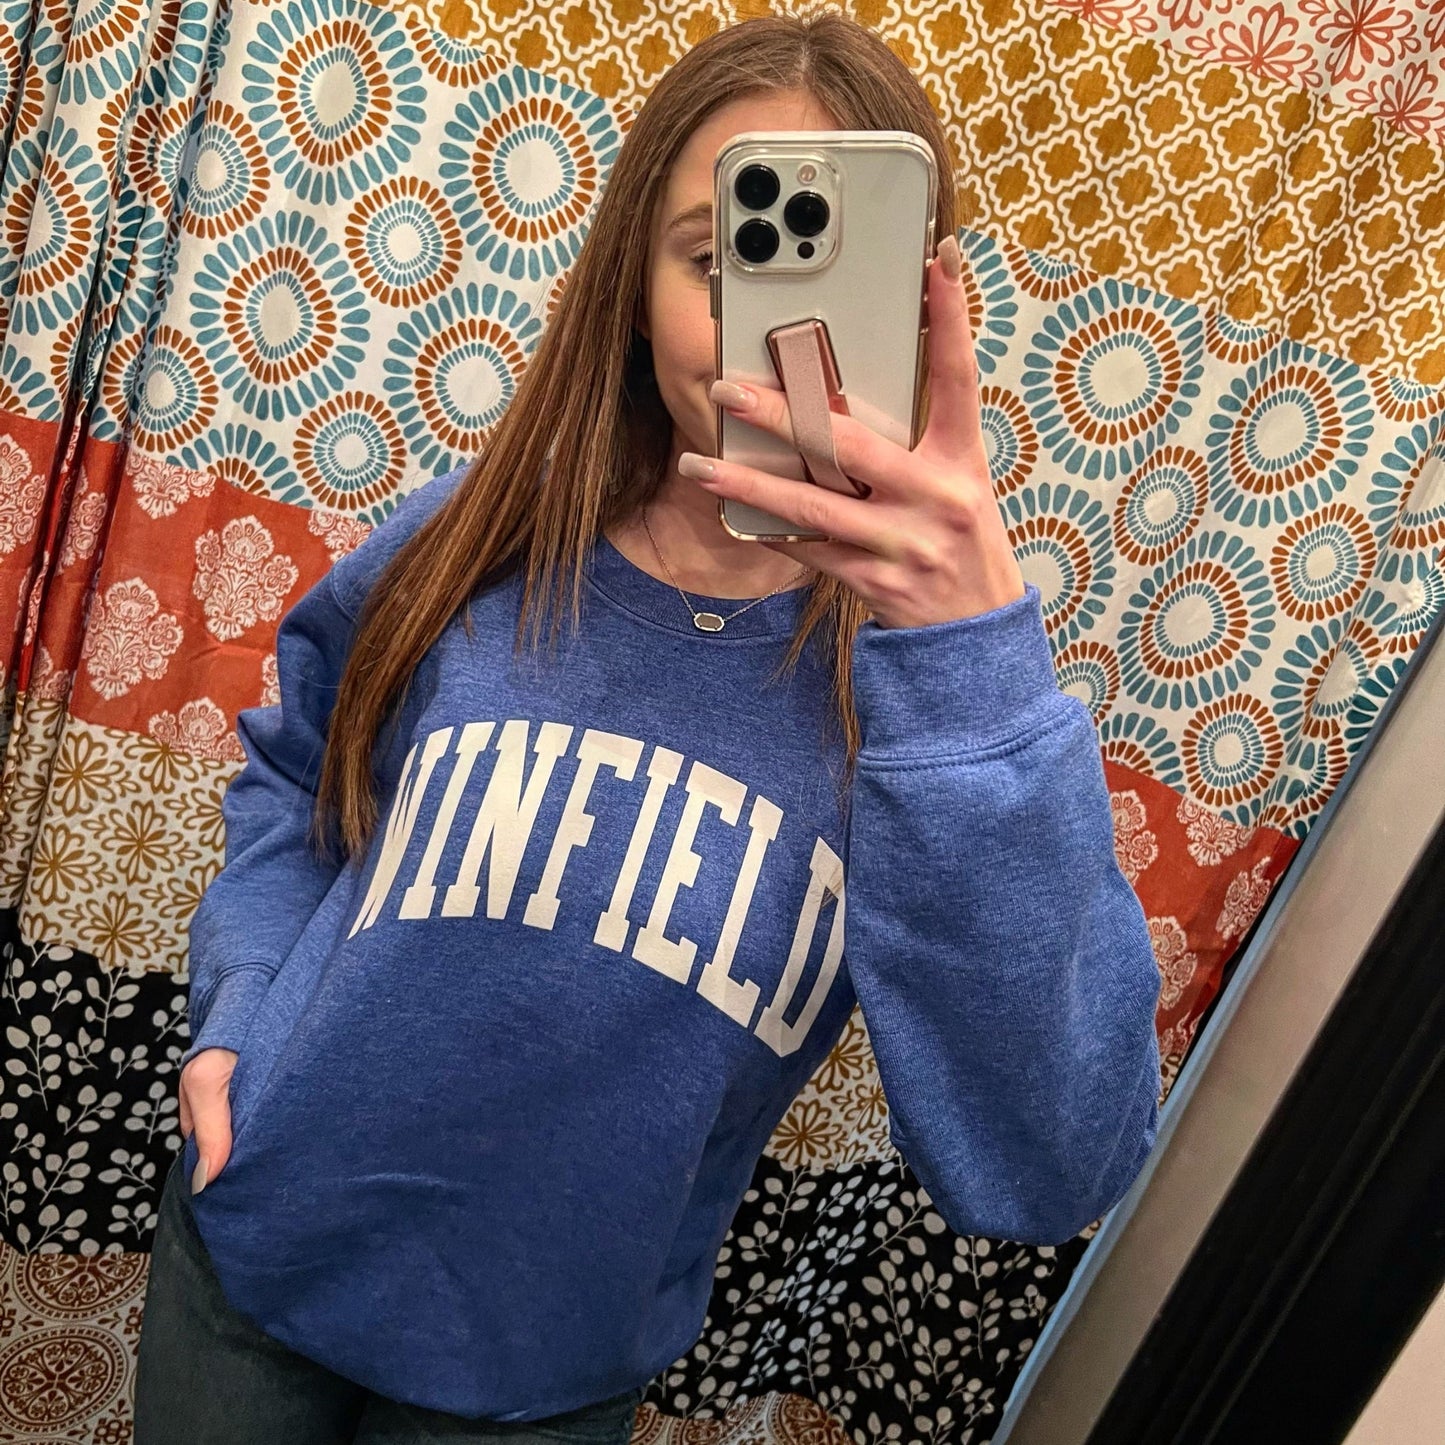 Winfield (Puff Ink) Crew Sweatshirt - Sweatshirt